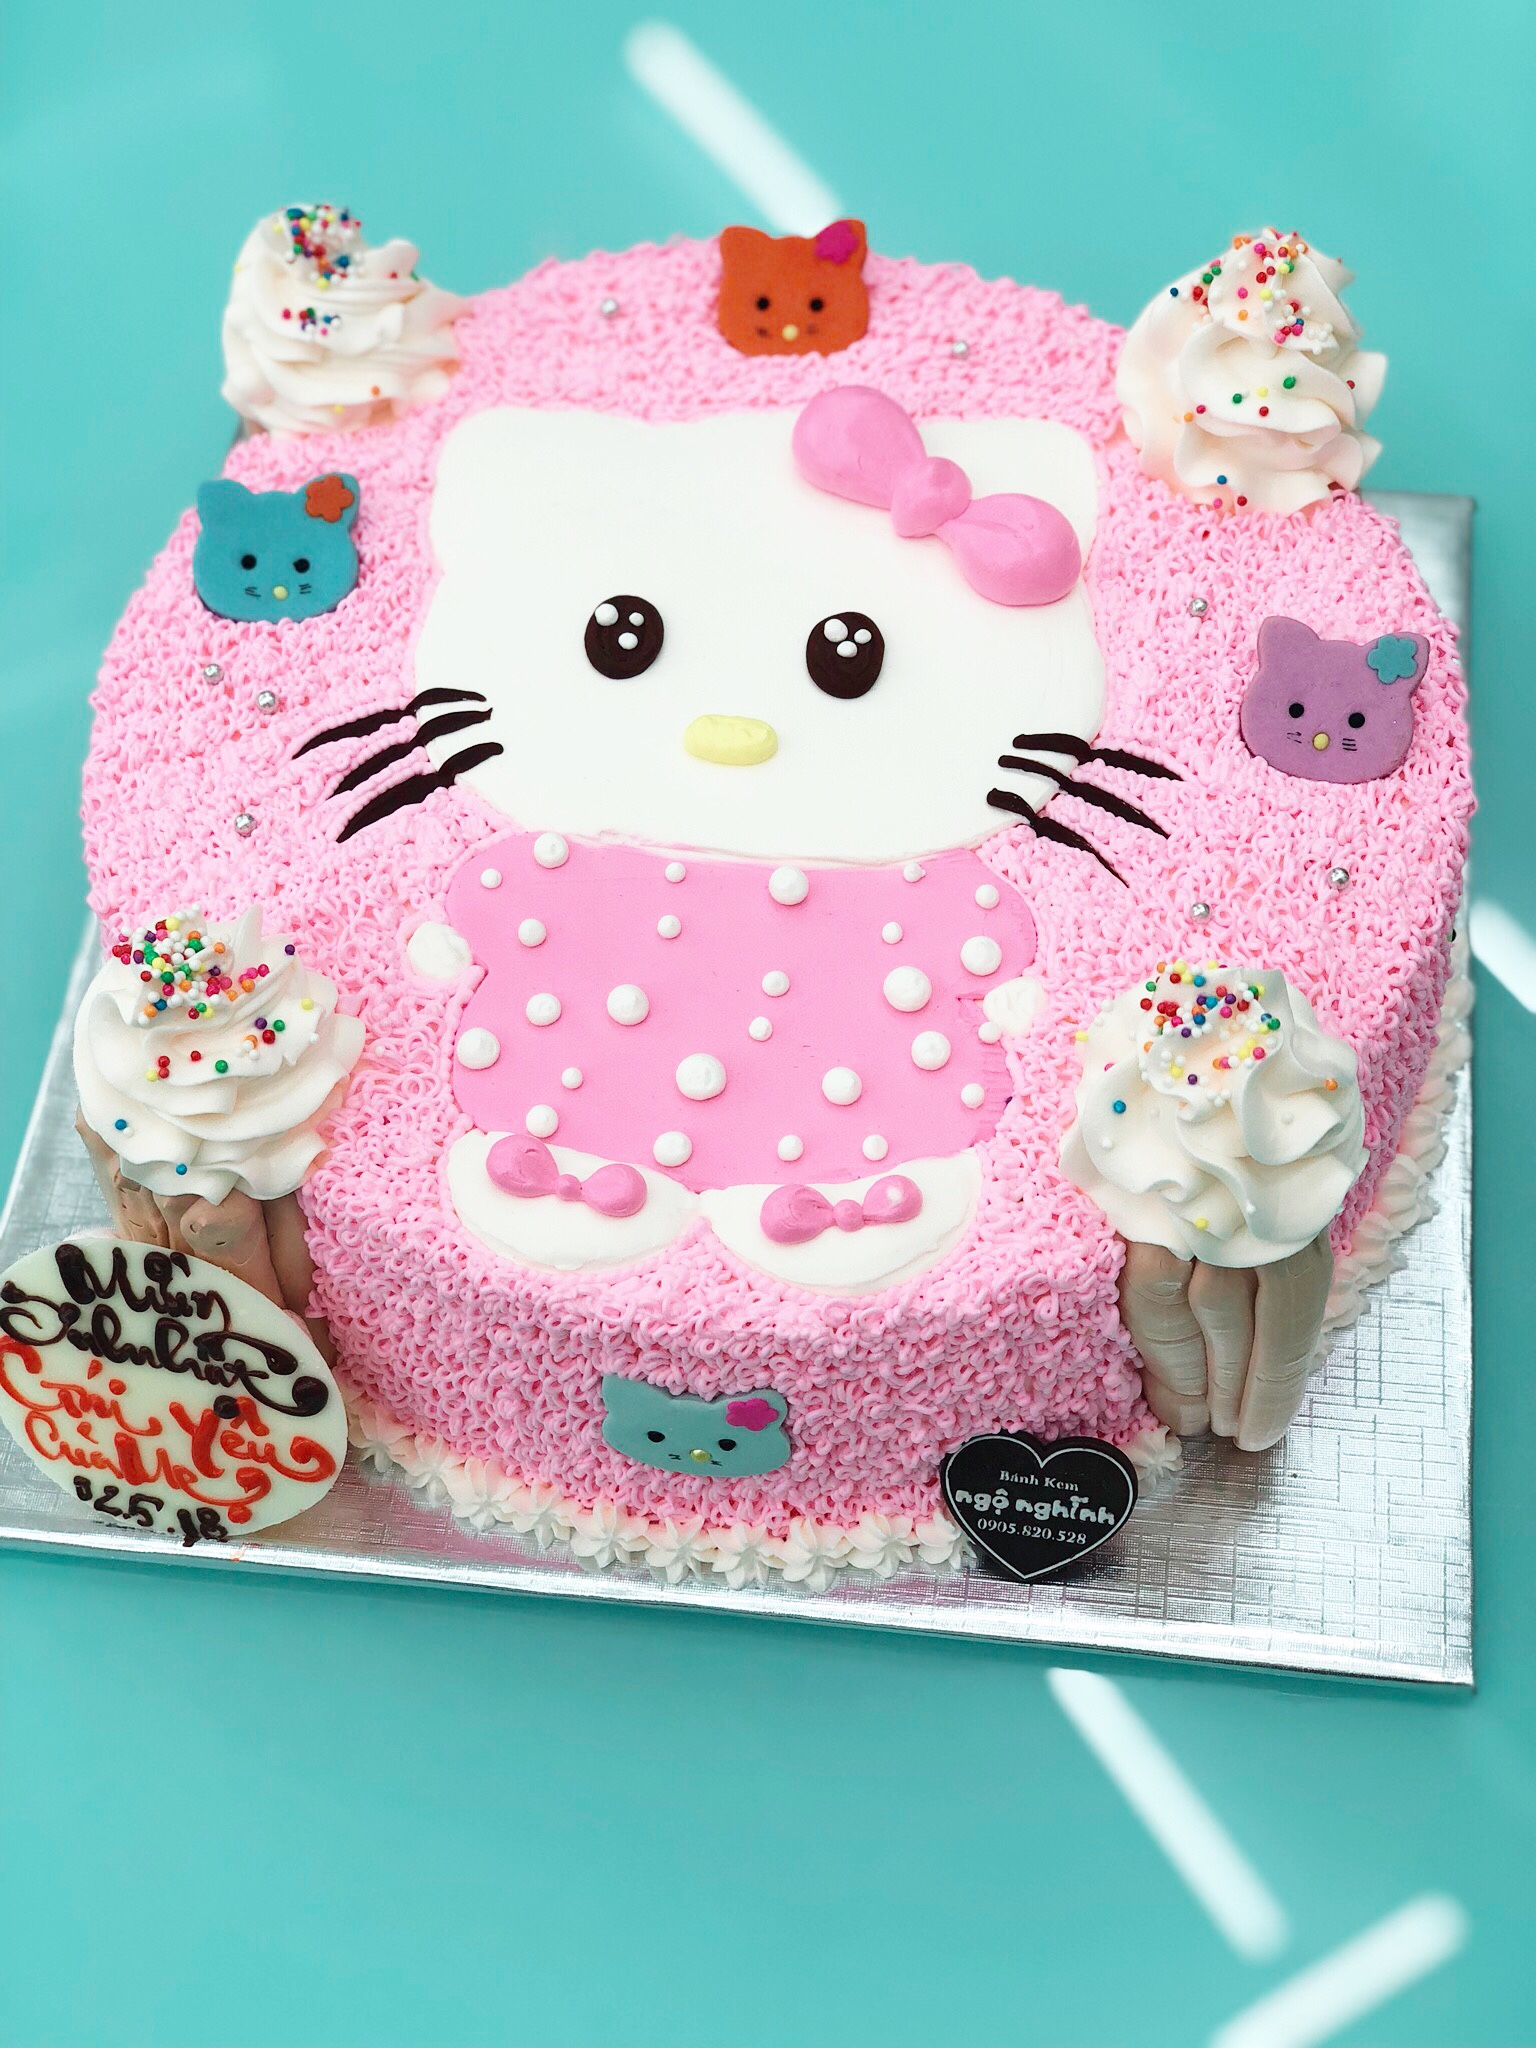 Hello Kitty mèo bánh là món quà tuyệt vời dành cho các fan của chúng tôi. Chúng tôi đã tạo ra những chiếc bánh với hình dáng của chú mèo ngộ nghĩnh này để mang đến niềm hạnh phúc và niềm vui đến cho bạn. Hãy xem hình ảnh để chứng kiến sự đáng yêu và tinh tế của Hello Kitty mèo bánh.